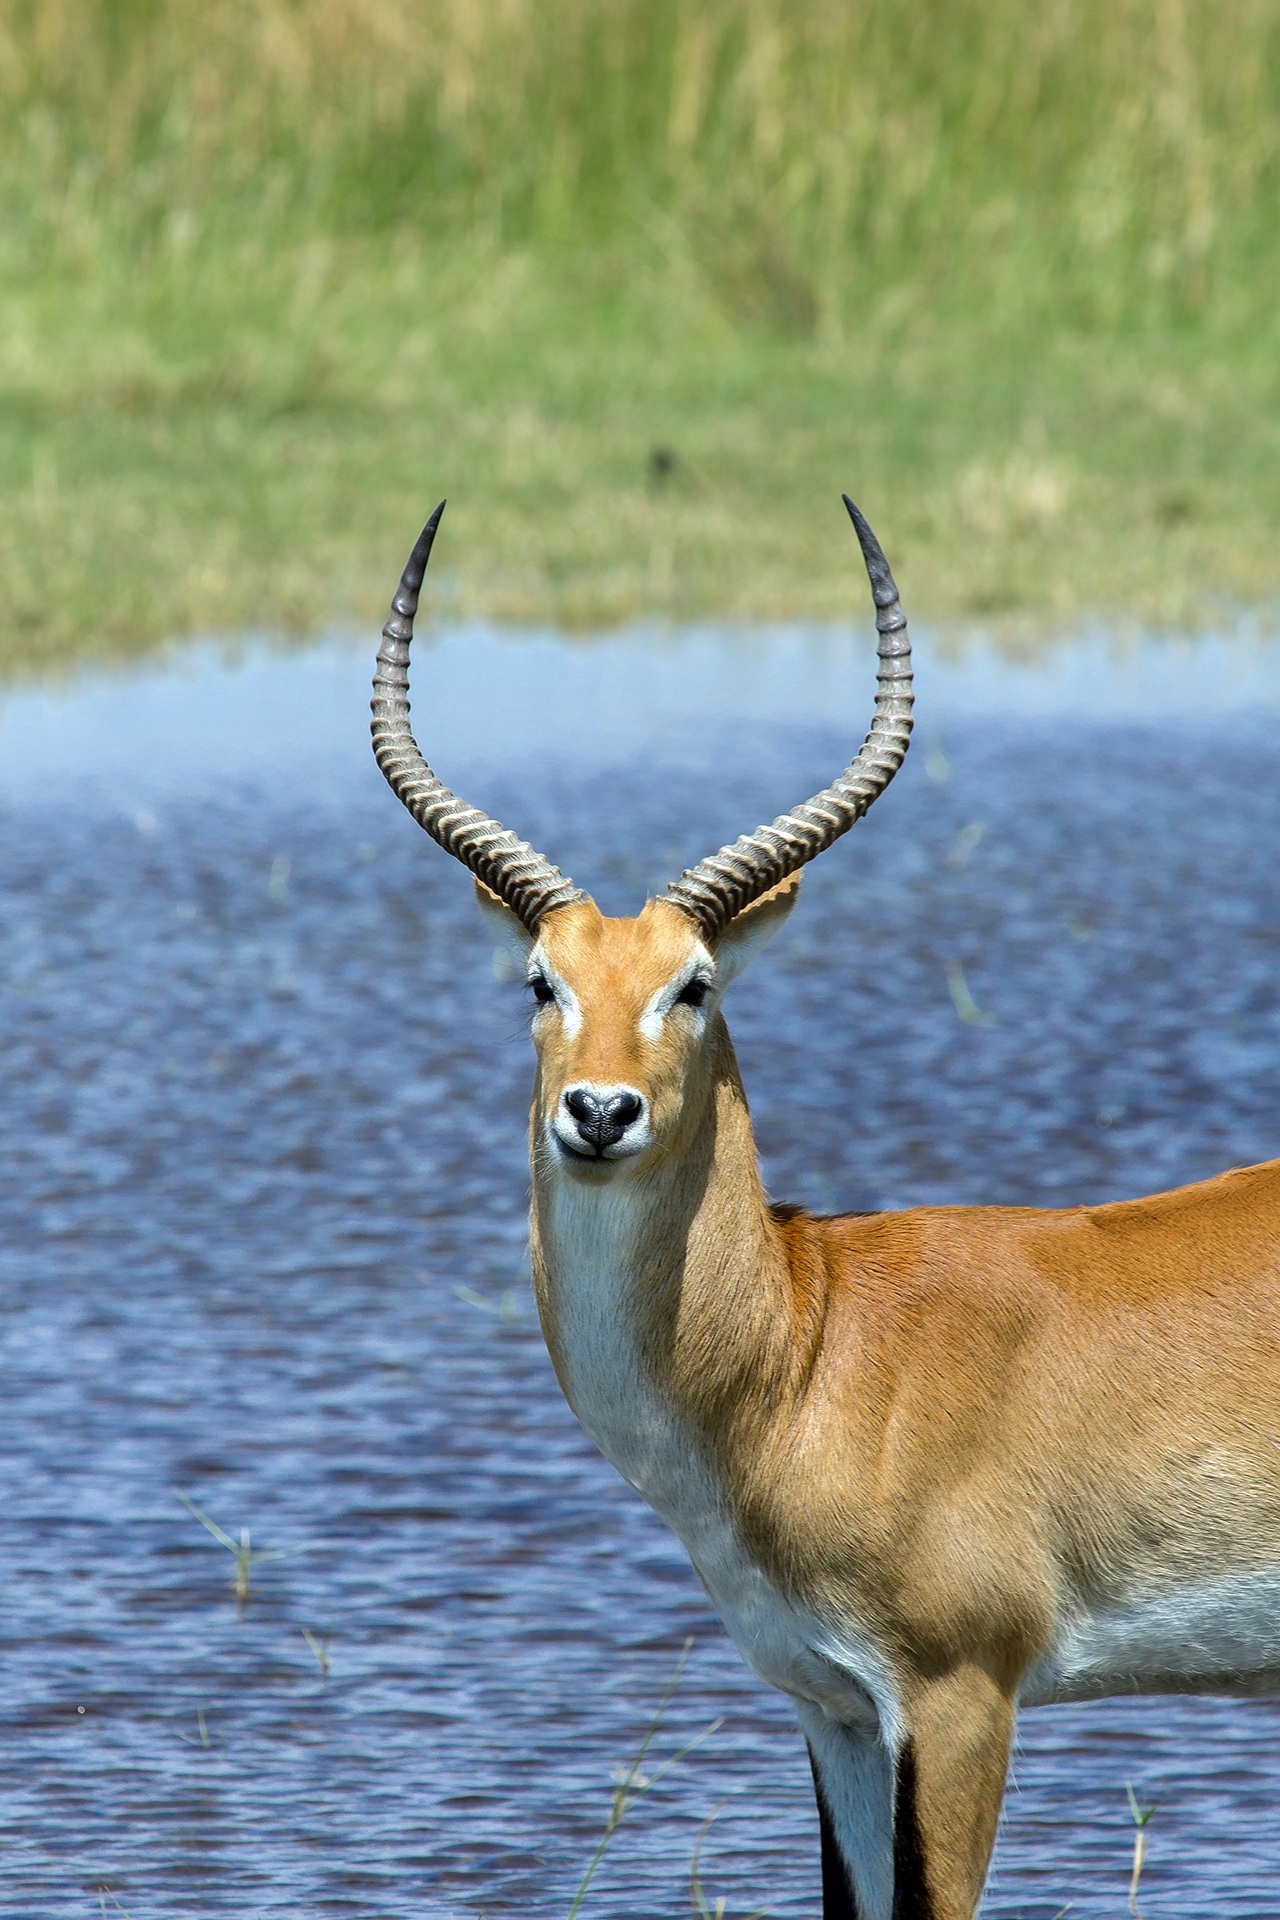 Uganda's National Animal – Uganda Kob